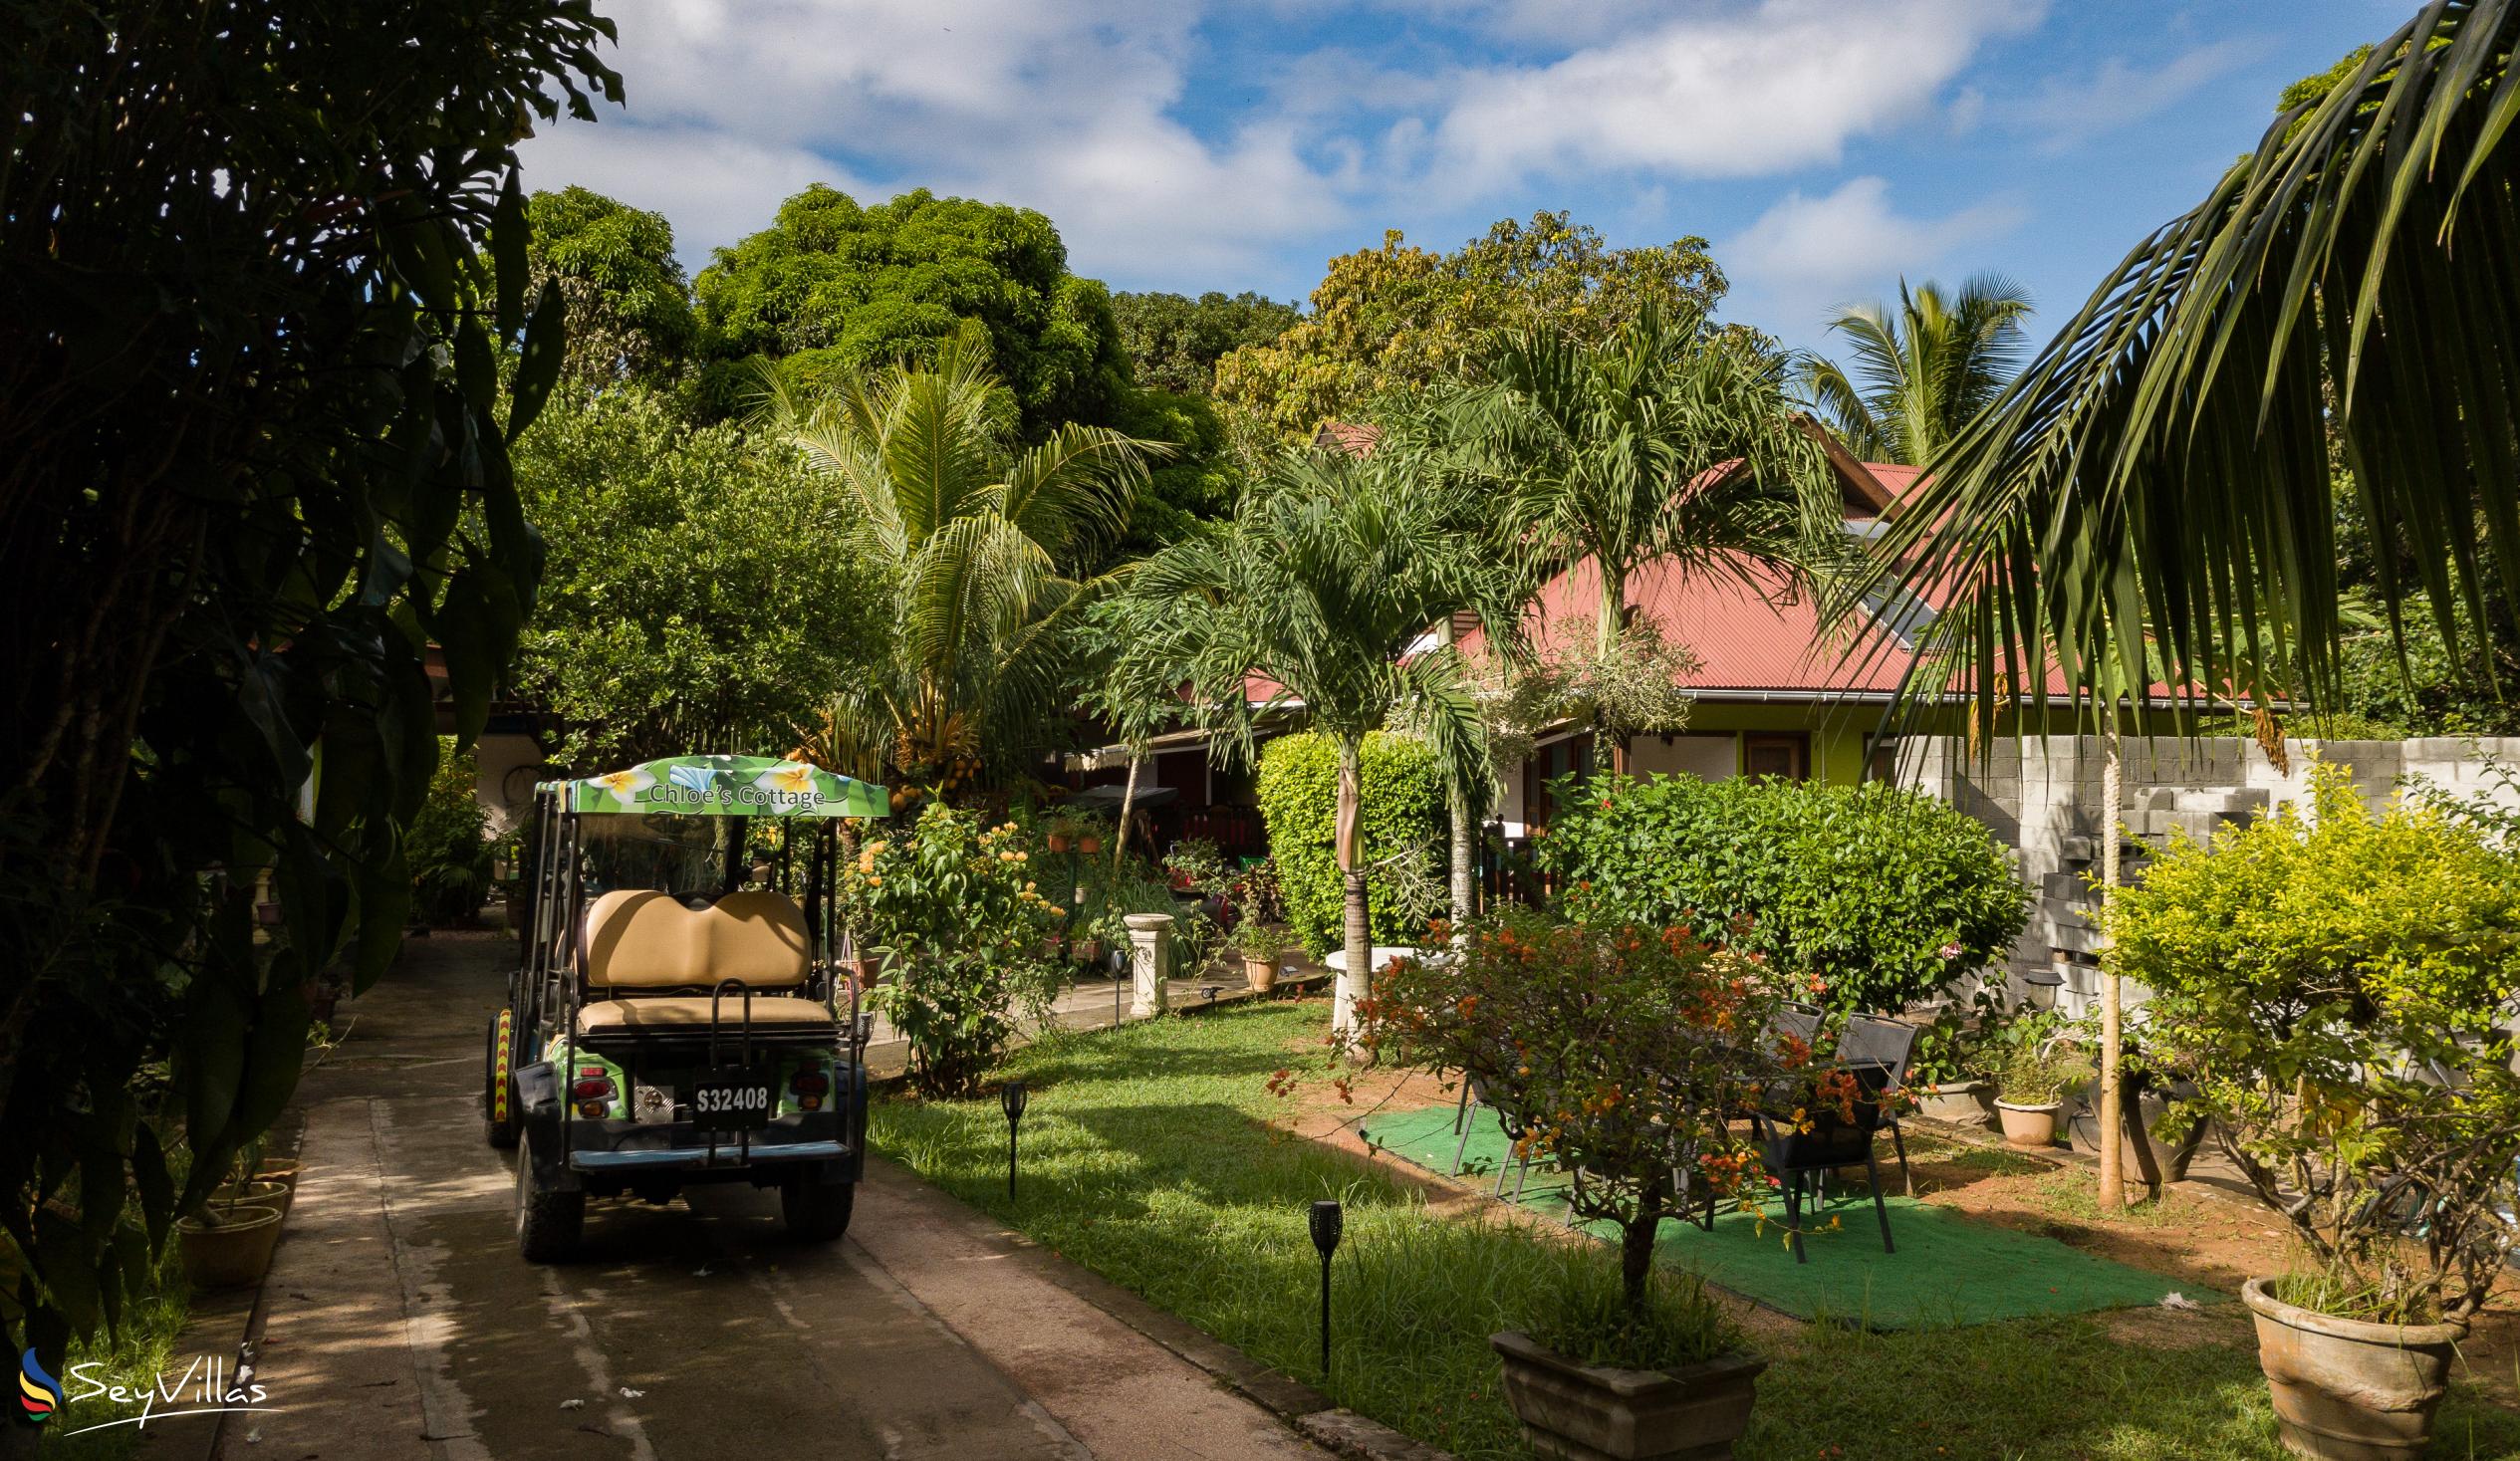 Photo 7: Chloe's Cottage - Outdoor area - La Digue (Seychelles)